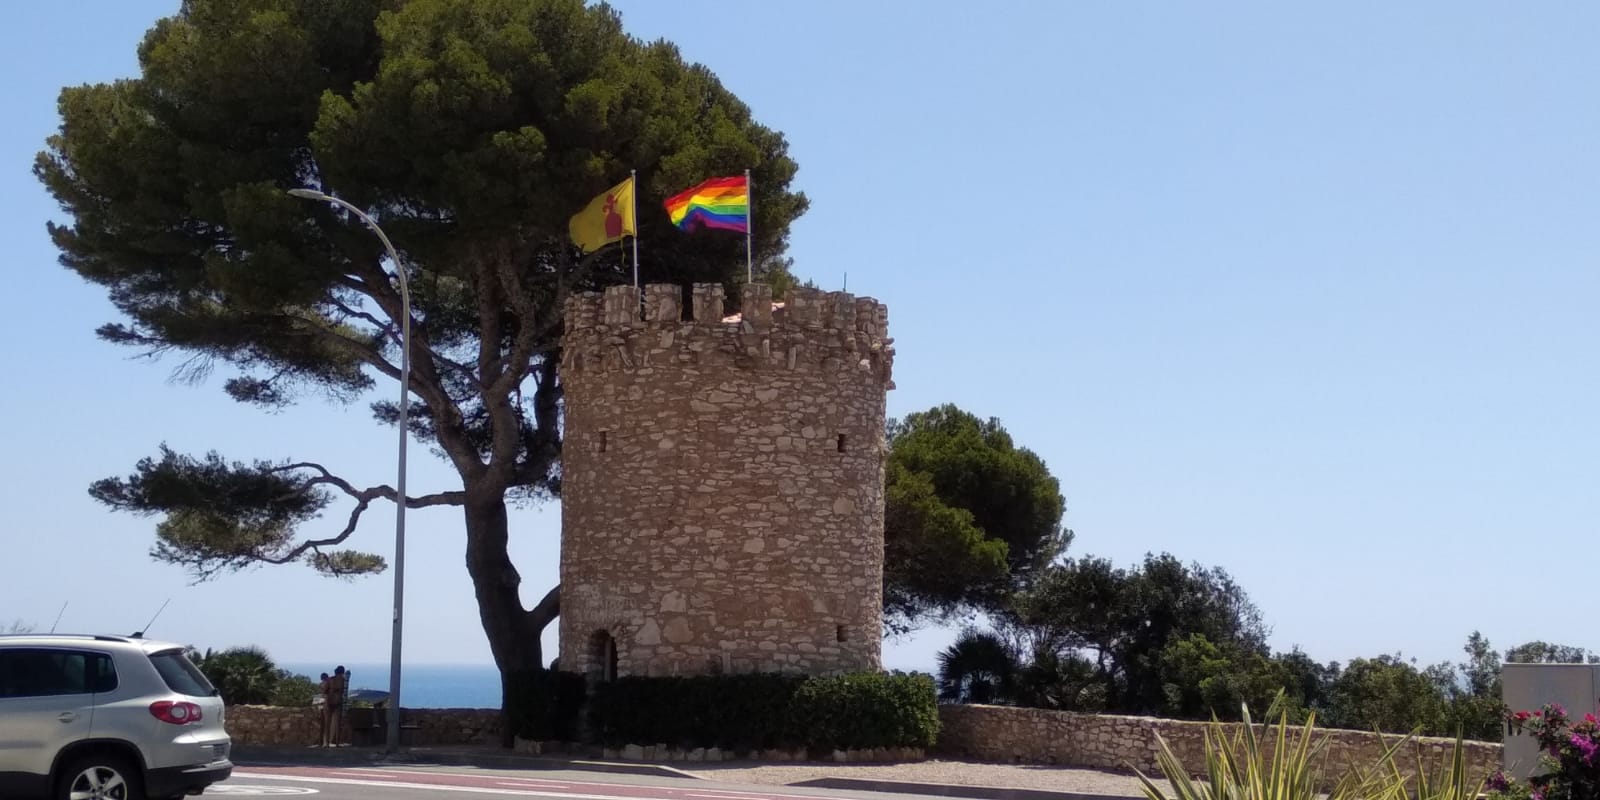 S’han col·locat 4 banderes de l’arc de Sant Martí en diversos punts del municipi per donar visibilitat als drets de les persones lesbianes, gais, bisexuals, transgènere i intersexuals, així com instar a la tolerància zero a la discriminació